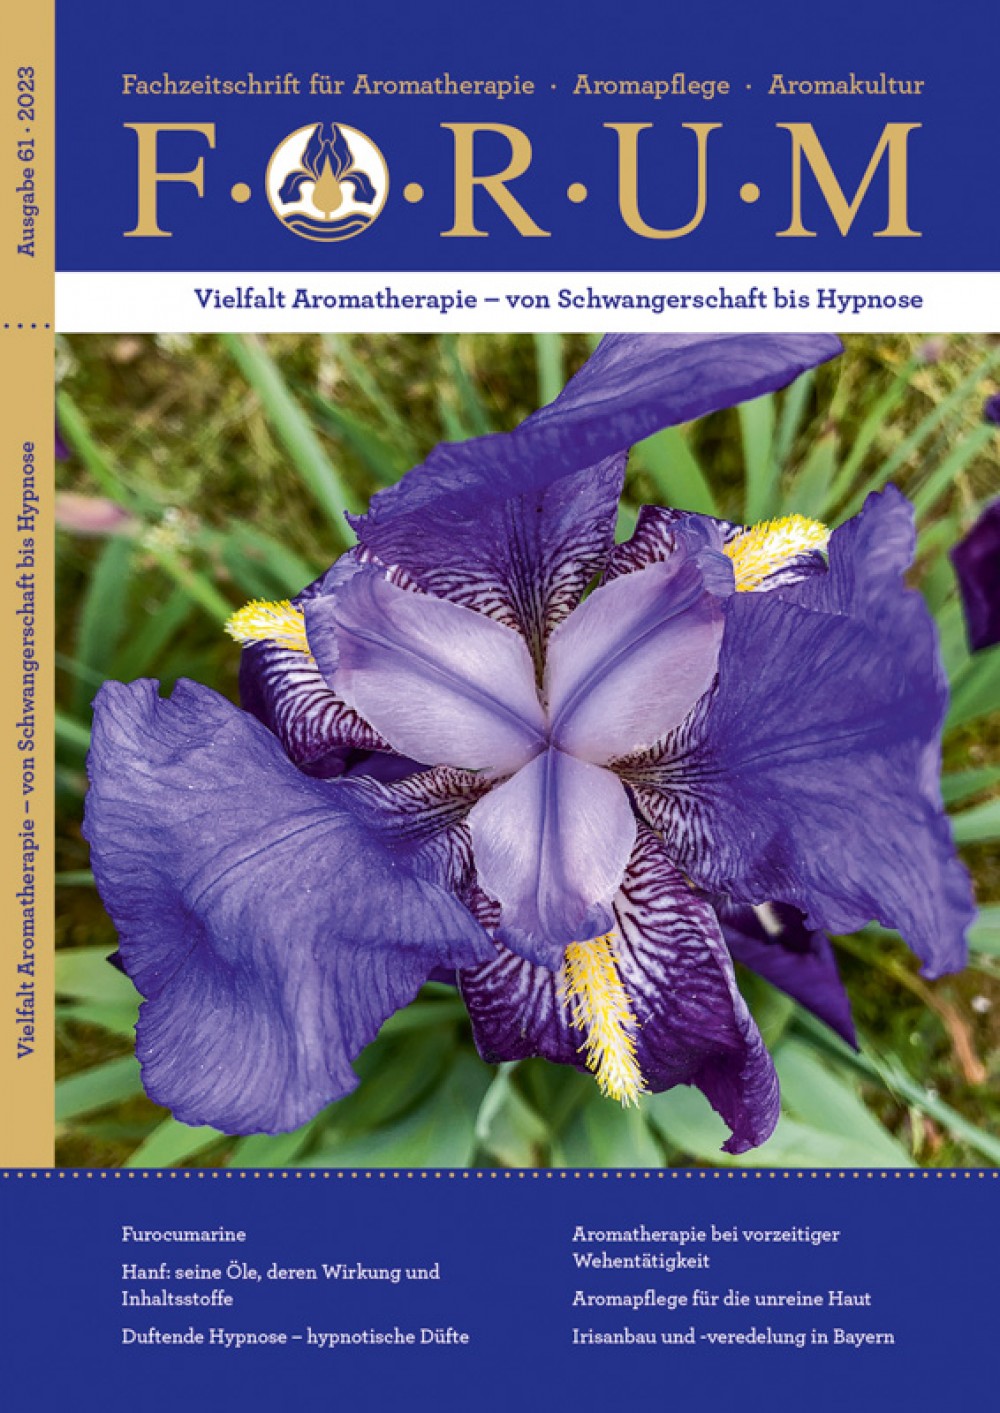 Online kaufen: Fachzeitschrift FORUM Nr. 61 für Aromatherapie Aromapflege Aromakultur